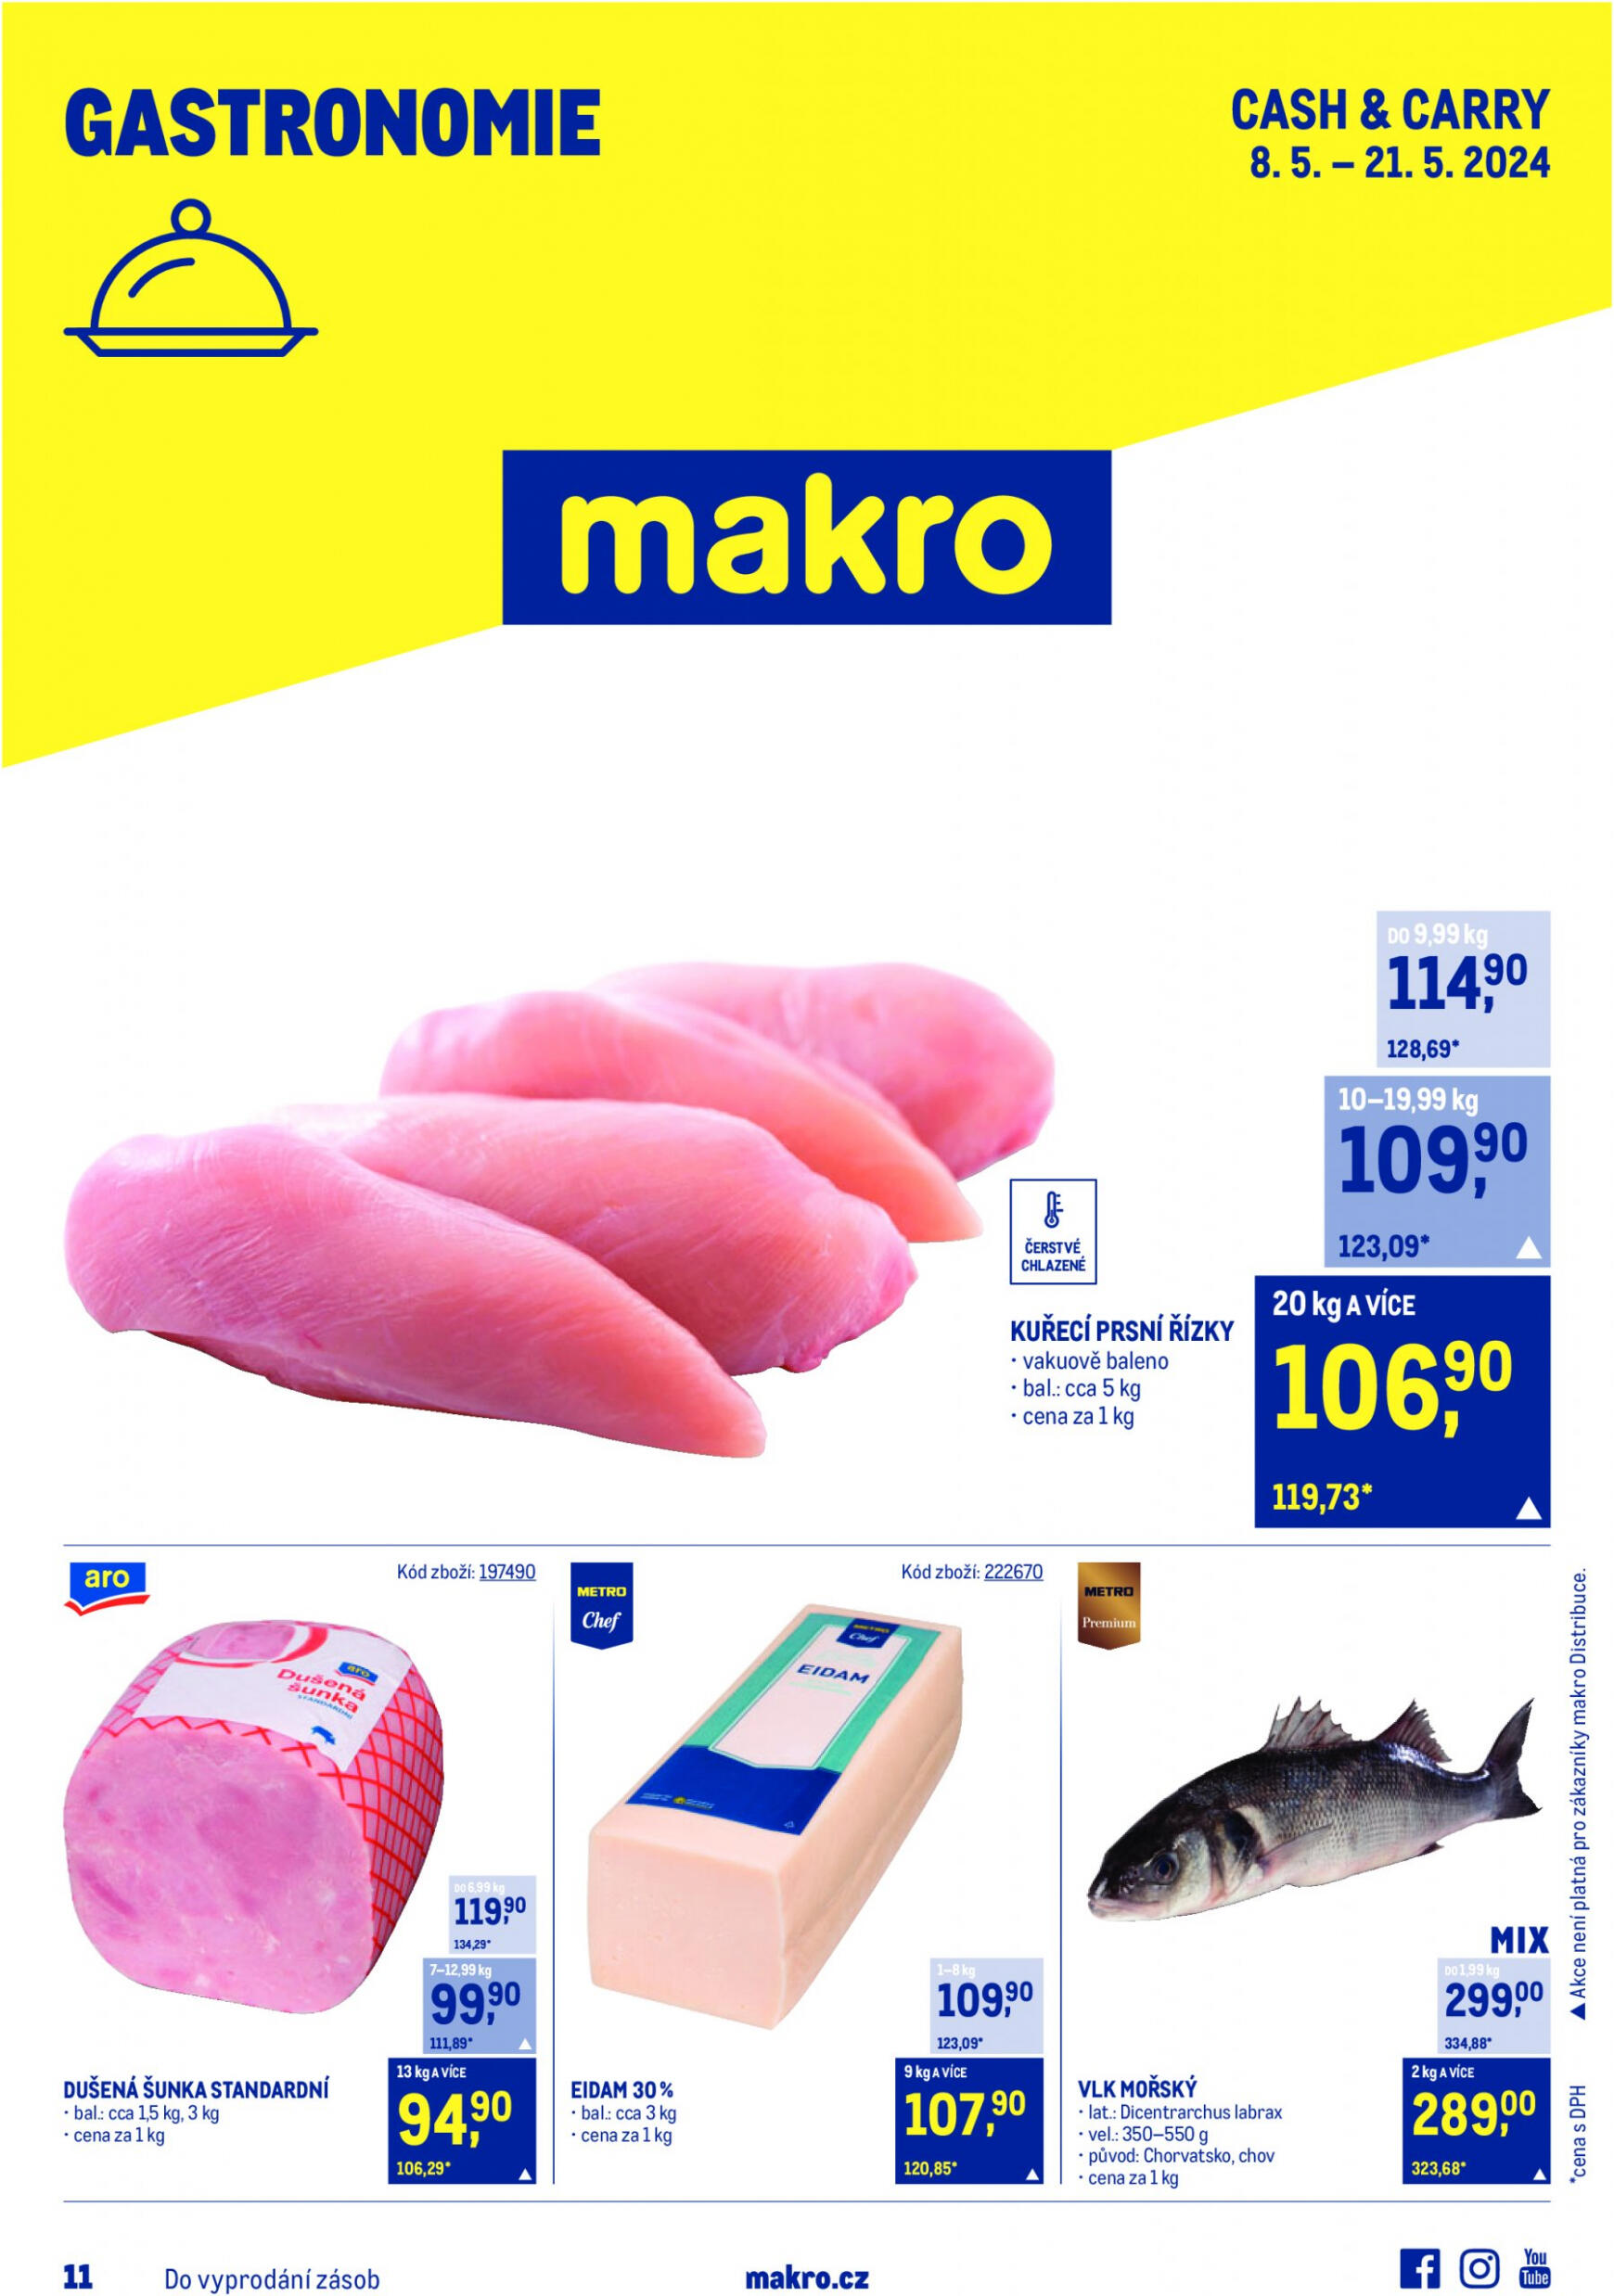 makro - Leták Makro - Gastronomie aktuální 08.05. - 21.05. - page: 1